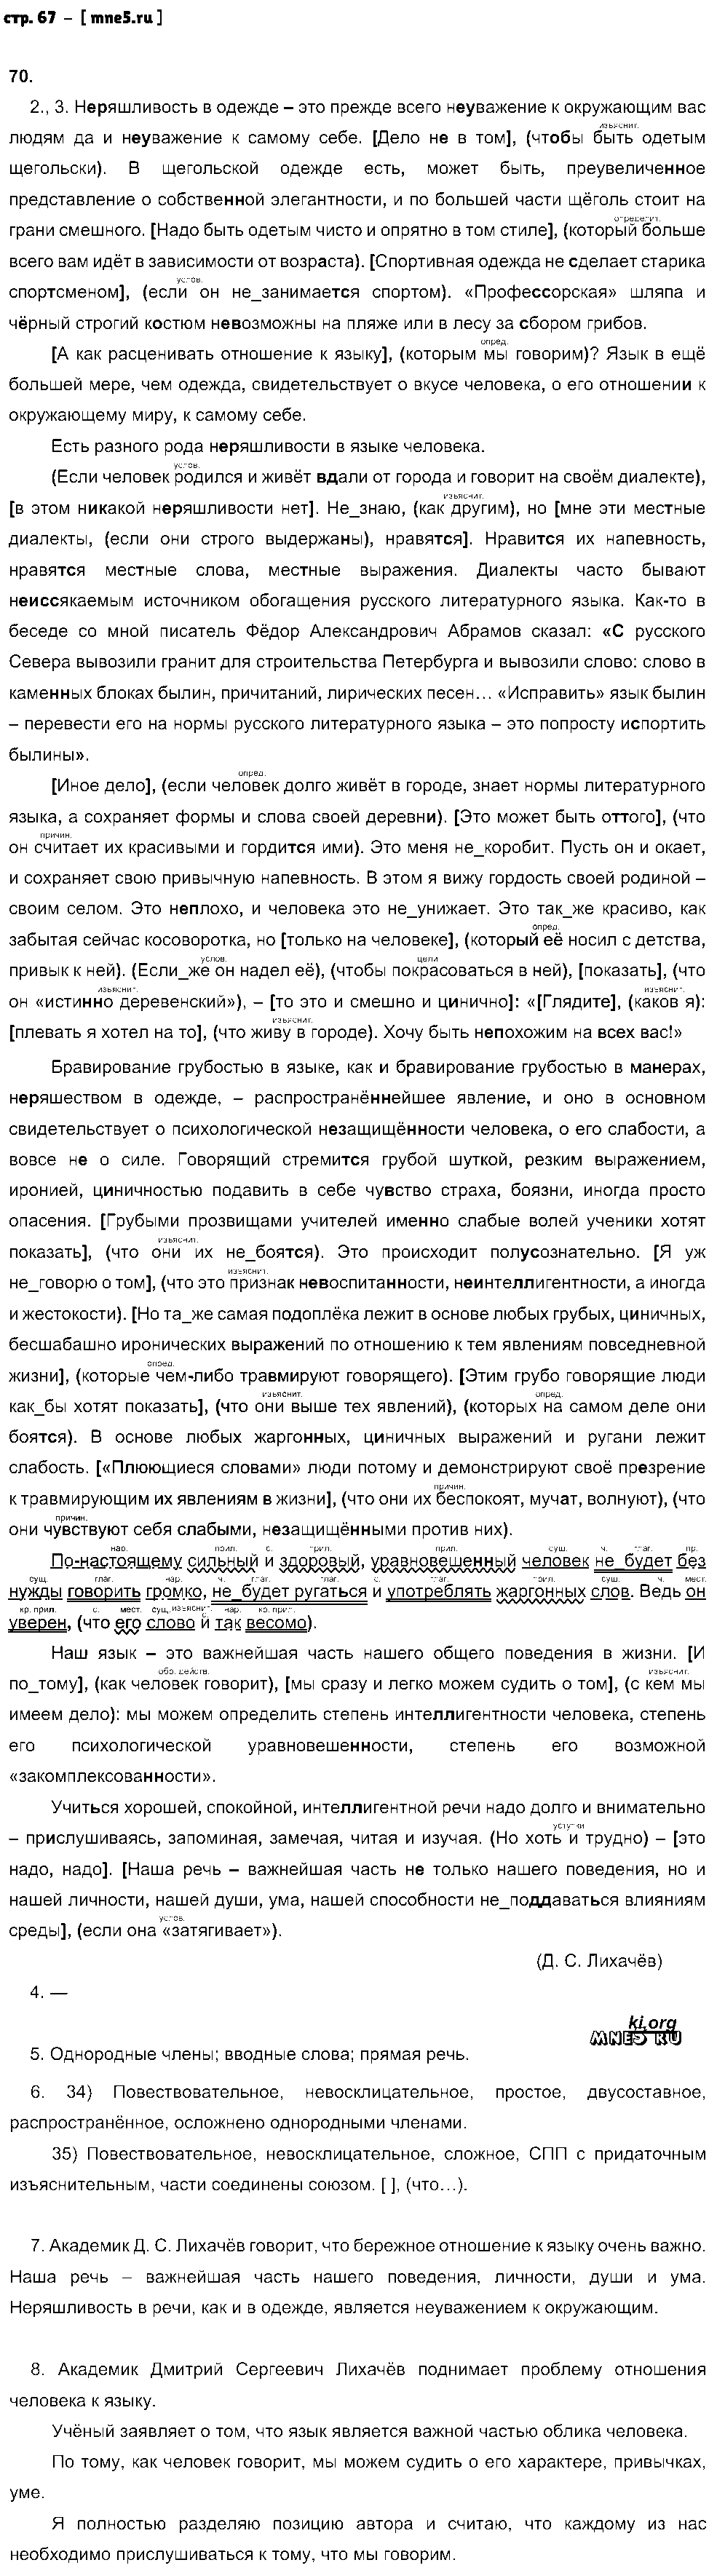 ГДЗ Русский язык 9 класс - стр. 67